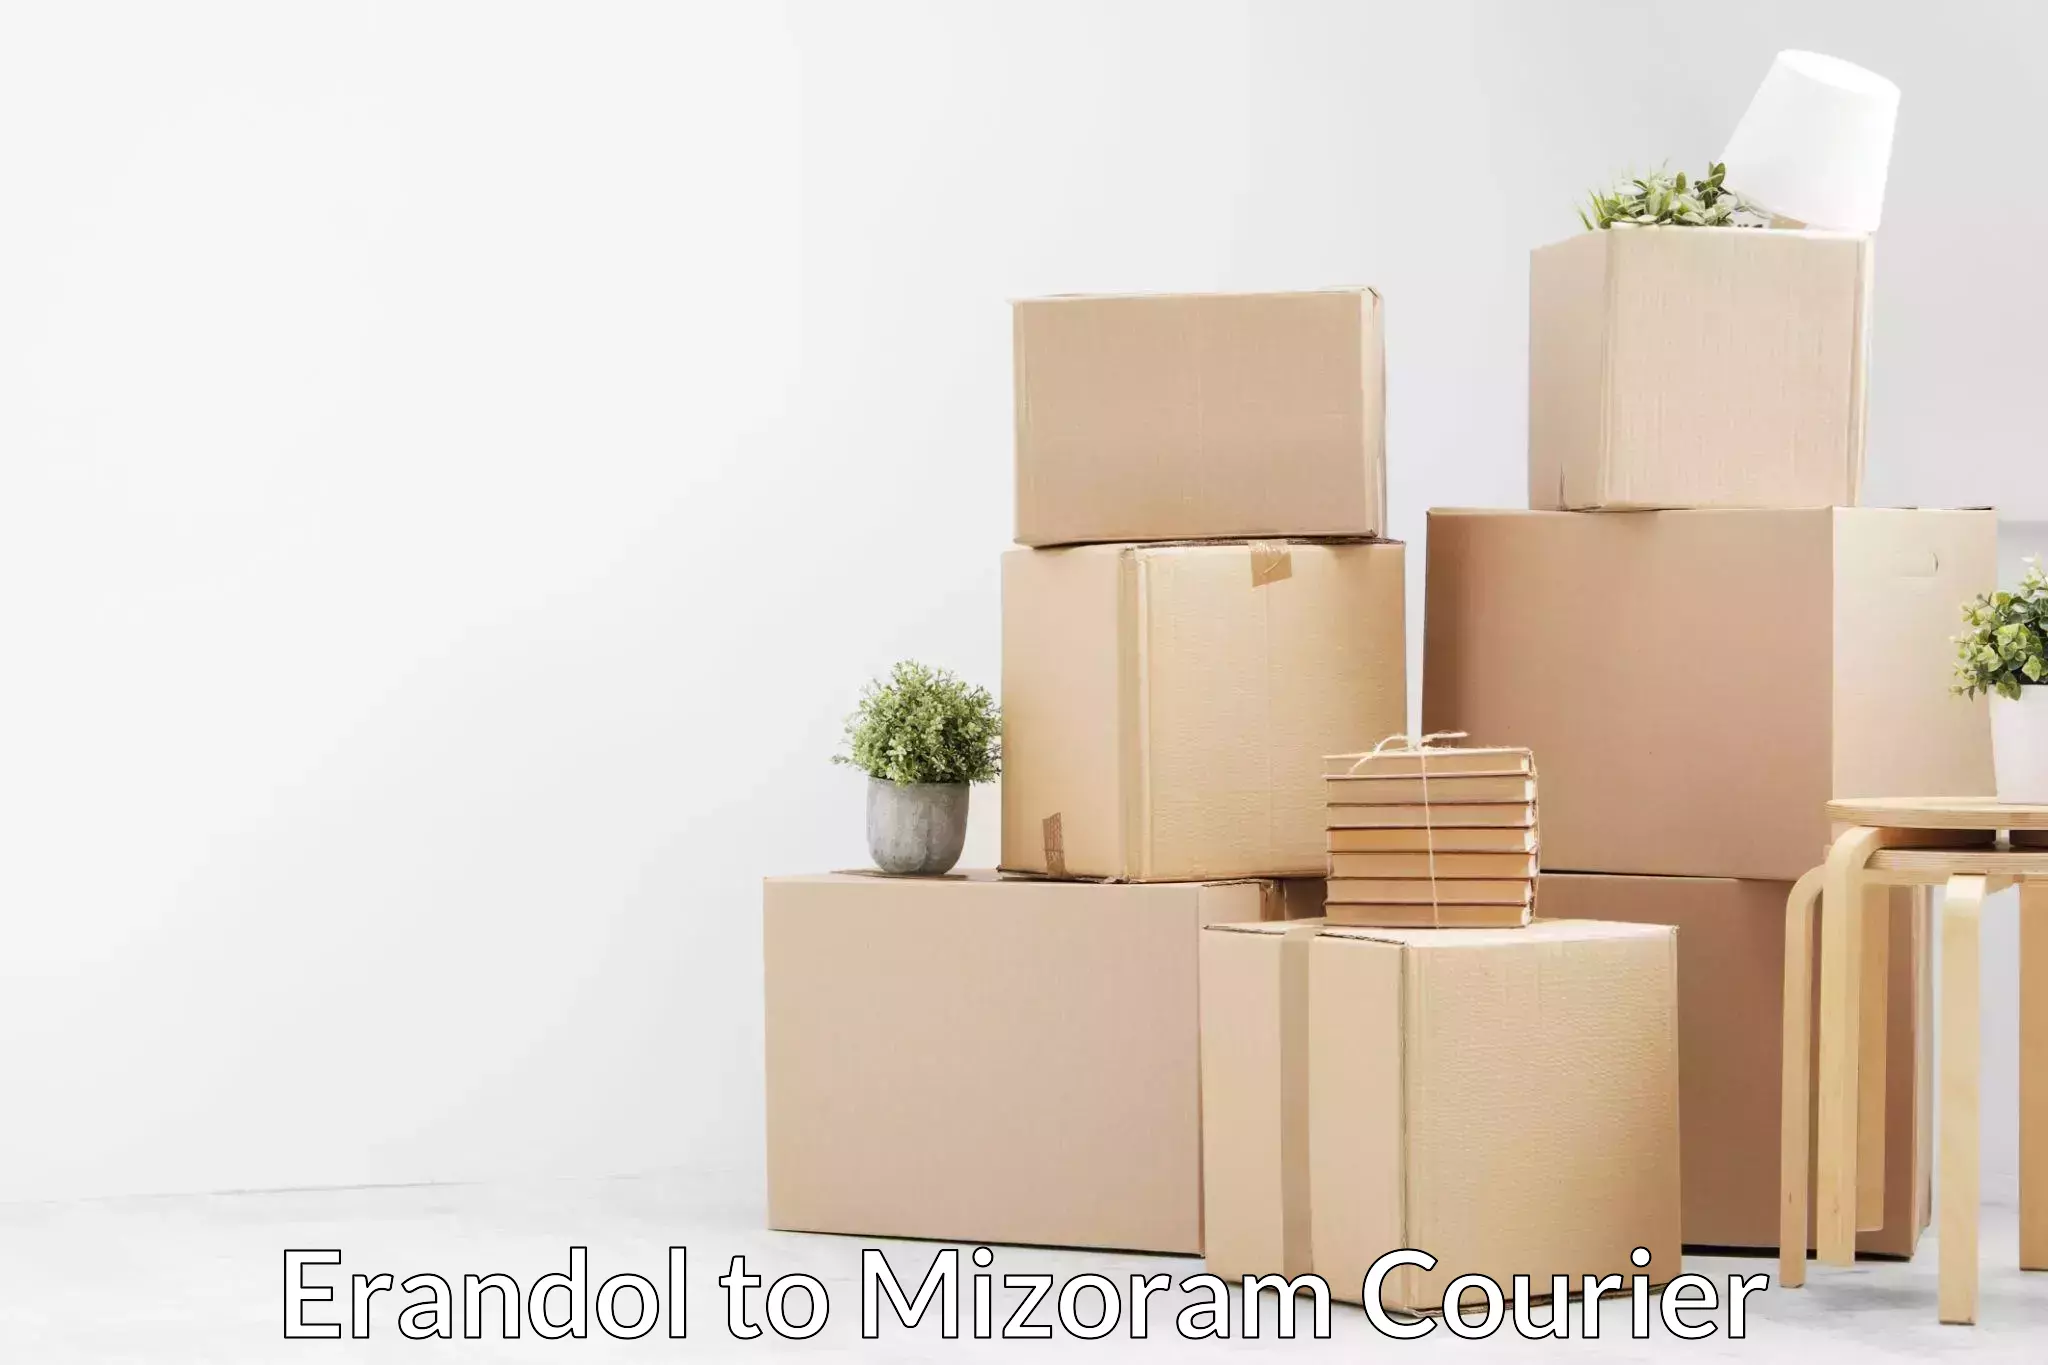 Professional furniture movers Erandol to Mizoram